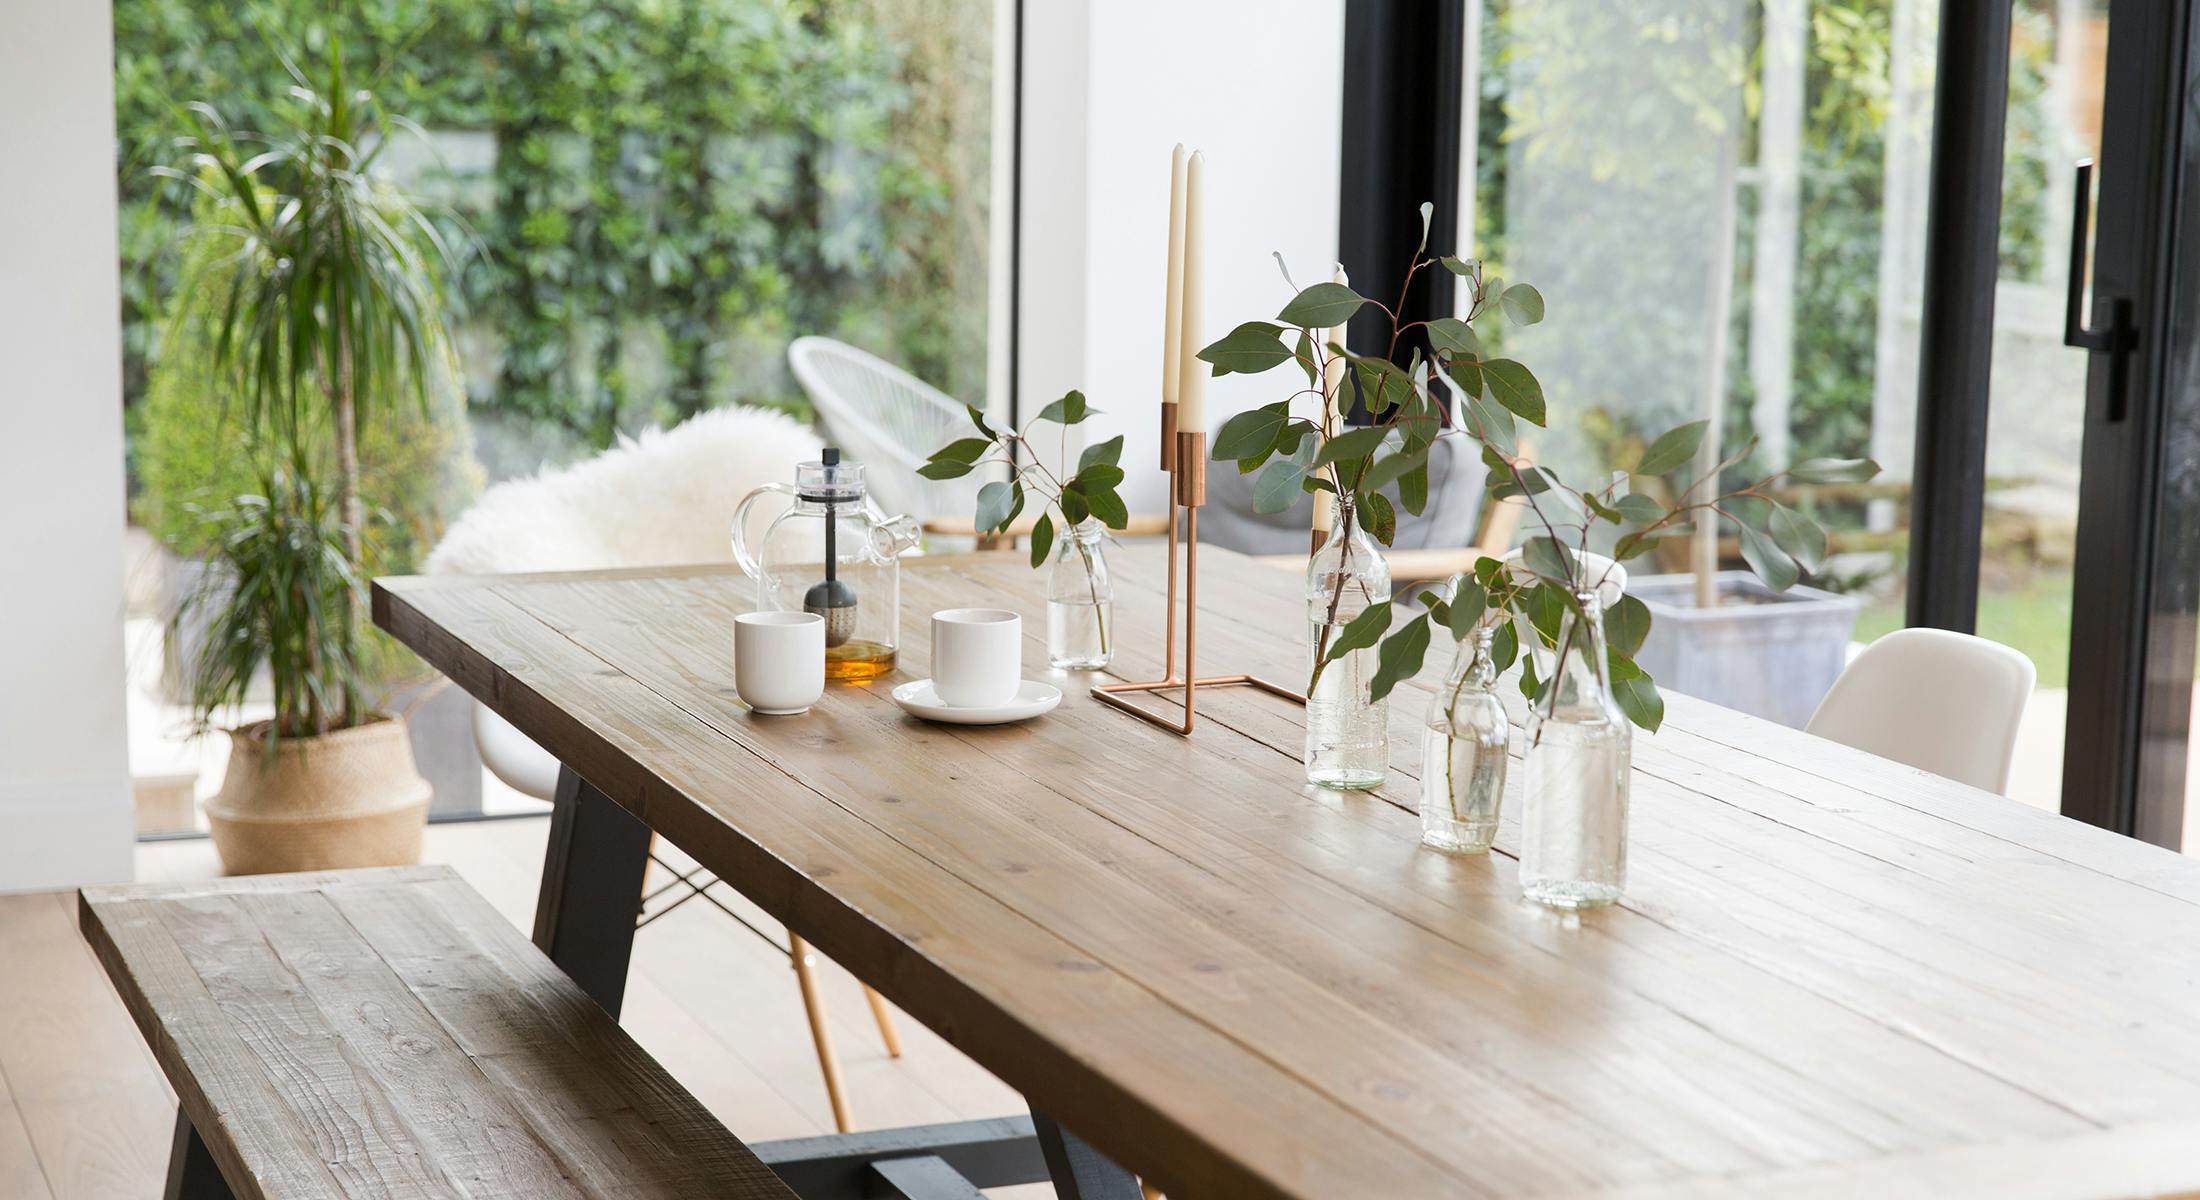 Dining table ideas for every interior decor trend   MADE.com